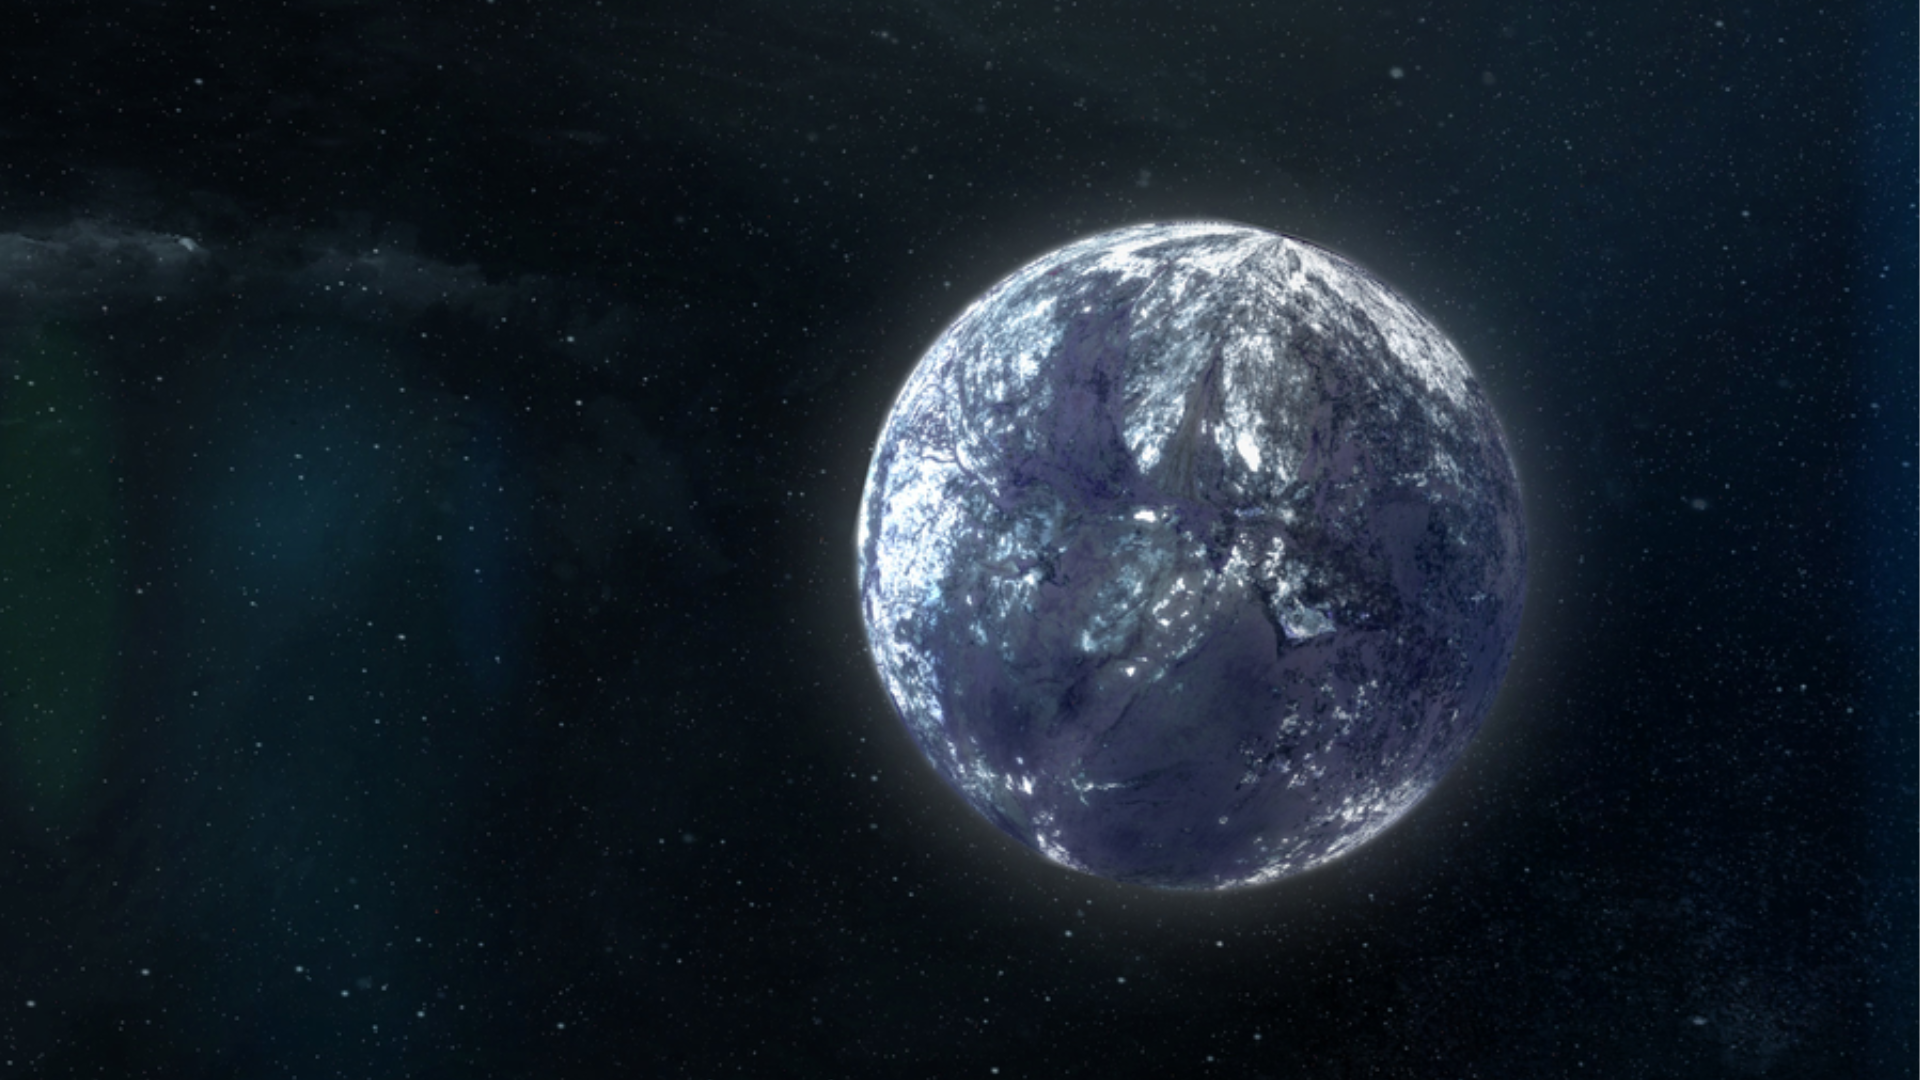 سیاره ای به نظر یخی تنها در فضا.